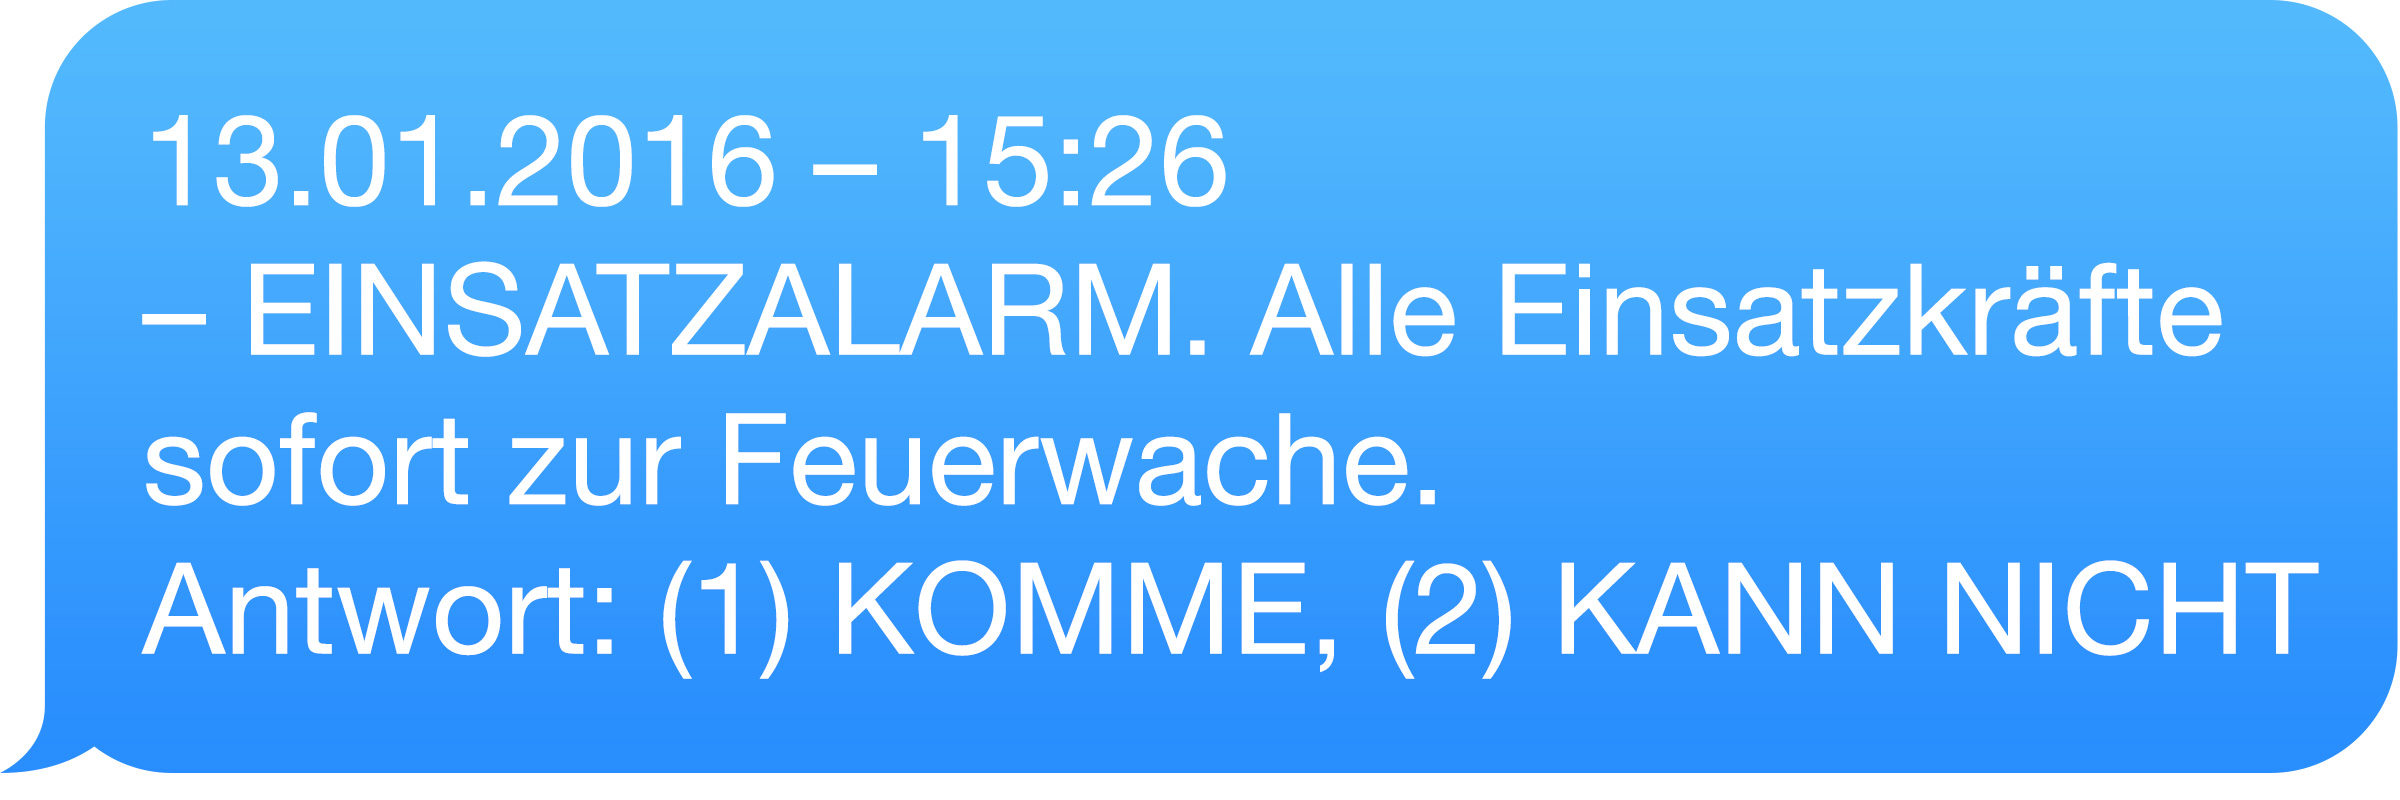 Beispiel SMS für Alarmeinsätze